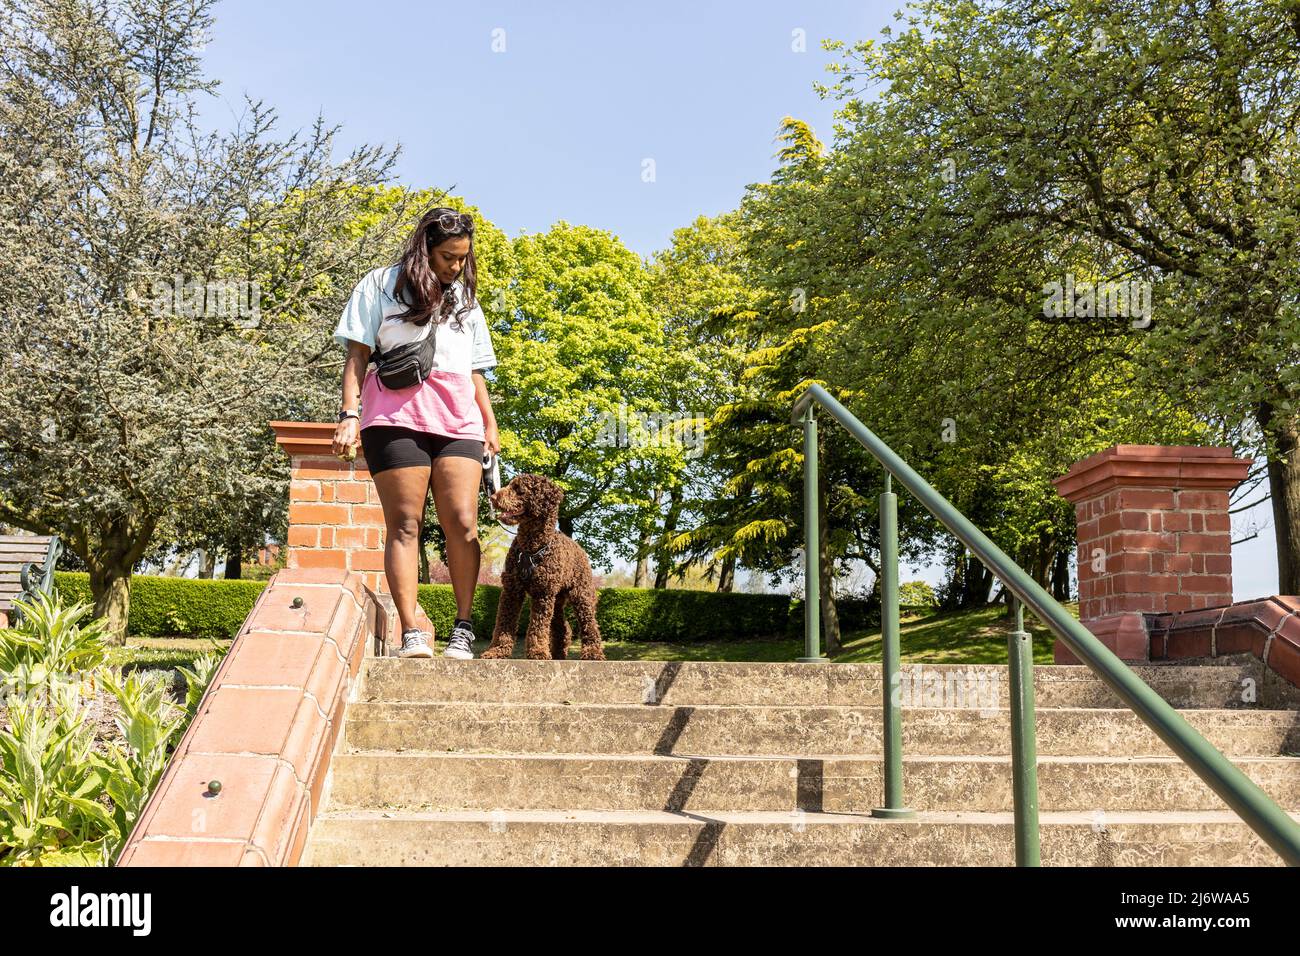 Asiatische Frau spielt mit einem Pudel Hund Welpen in einem Stadtpark. Junge Frau, die Hund lehrt und trainiert, gehorsam zu sein und Befehlen zu folgen Stockfoto